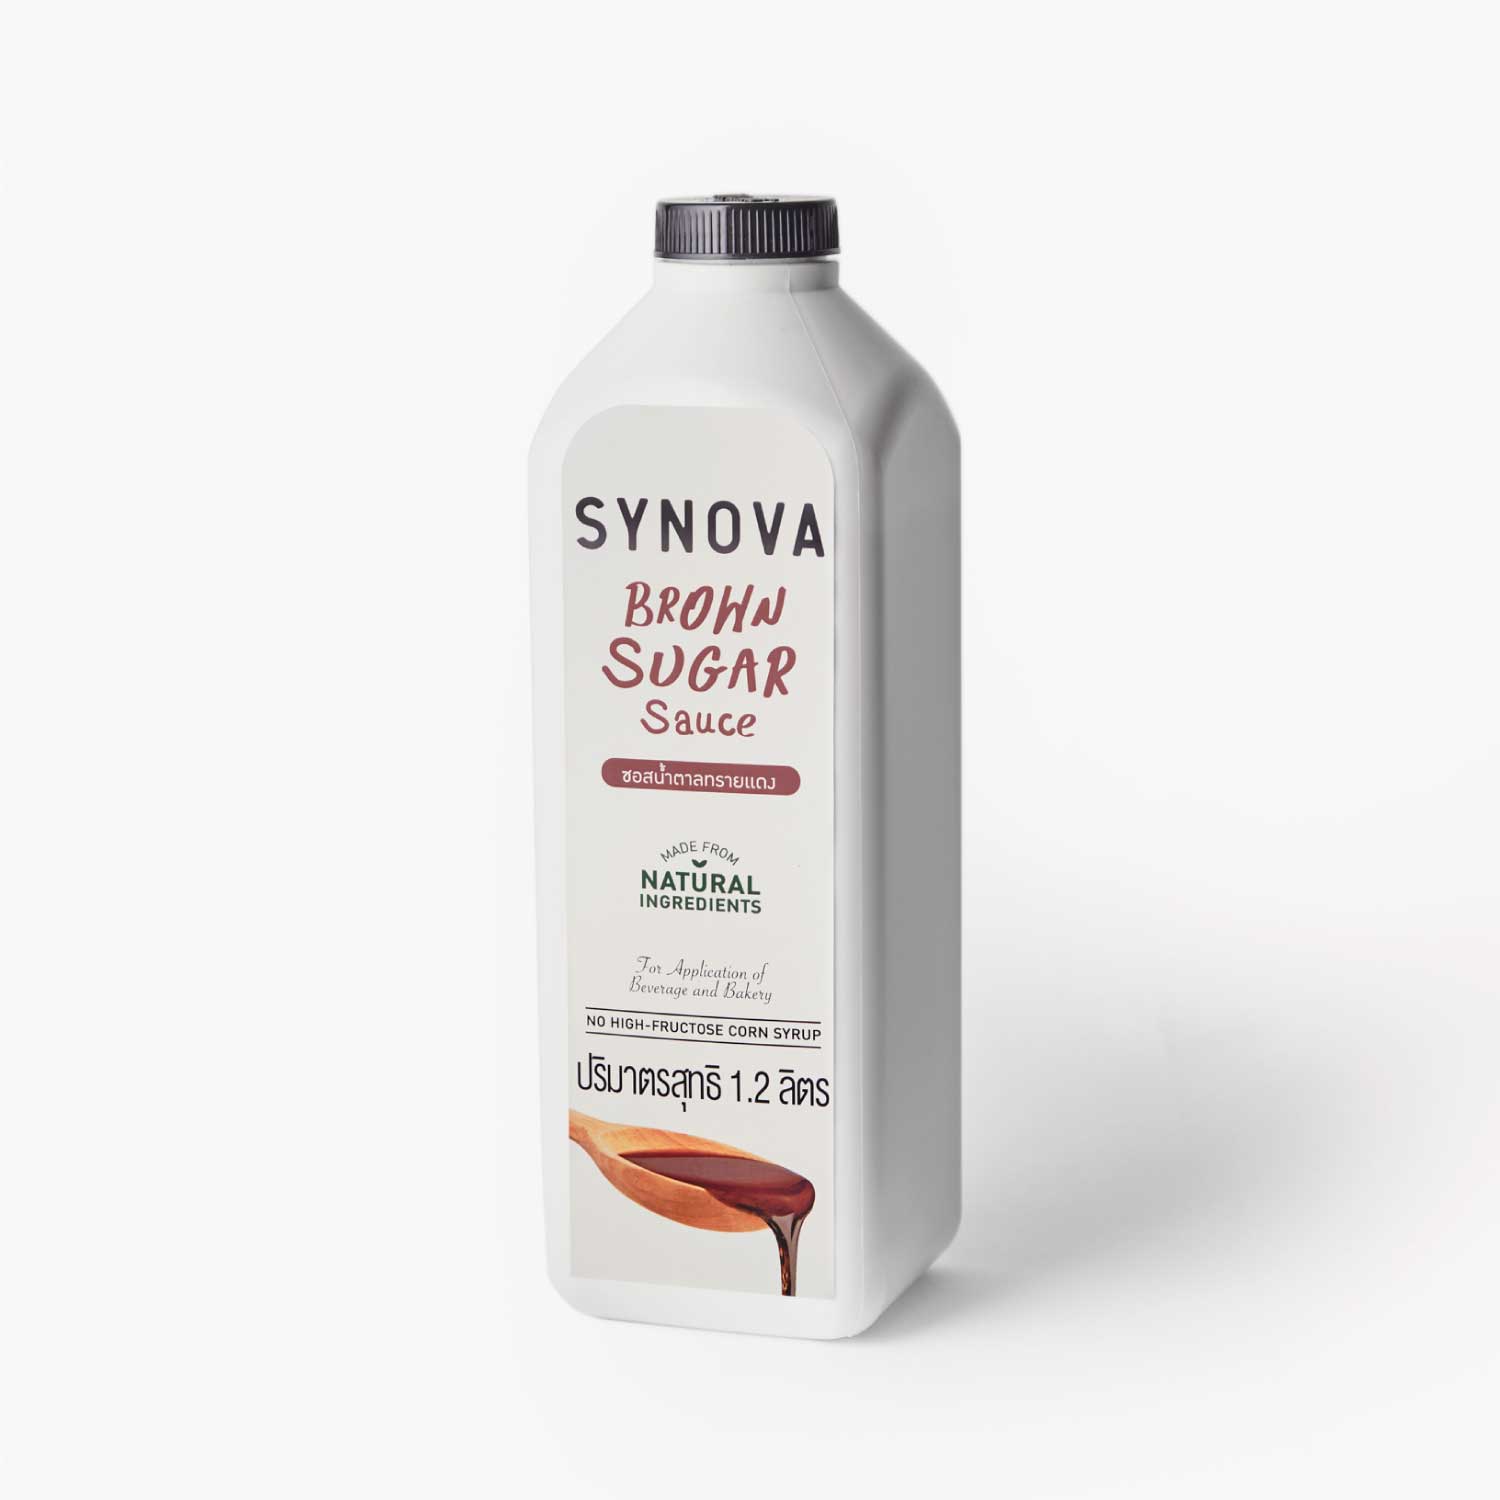 ซอสเข้มข้น : SYNOVA ซอสน้ำตาลทรายแดง (ขวด)